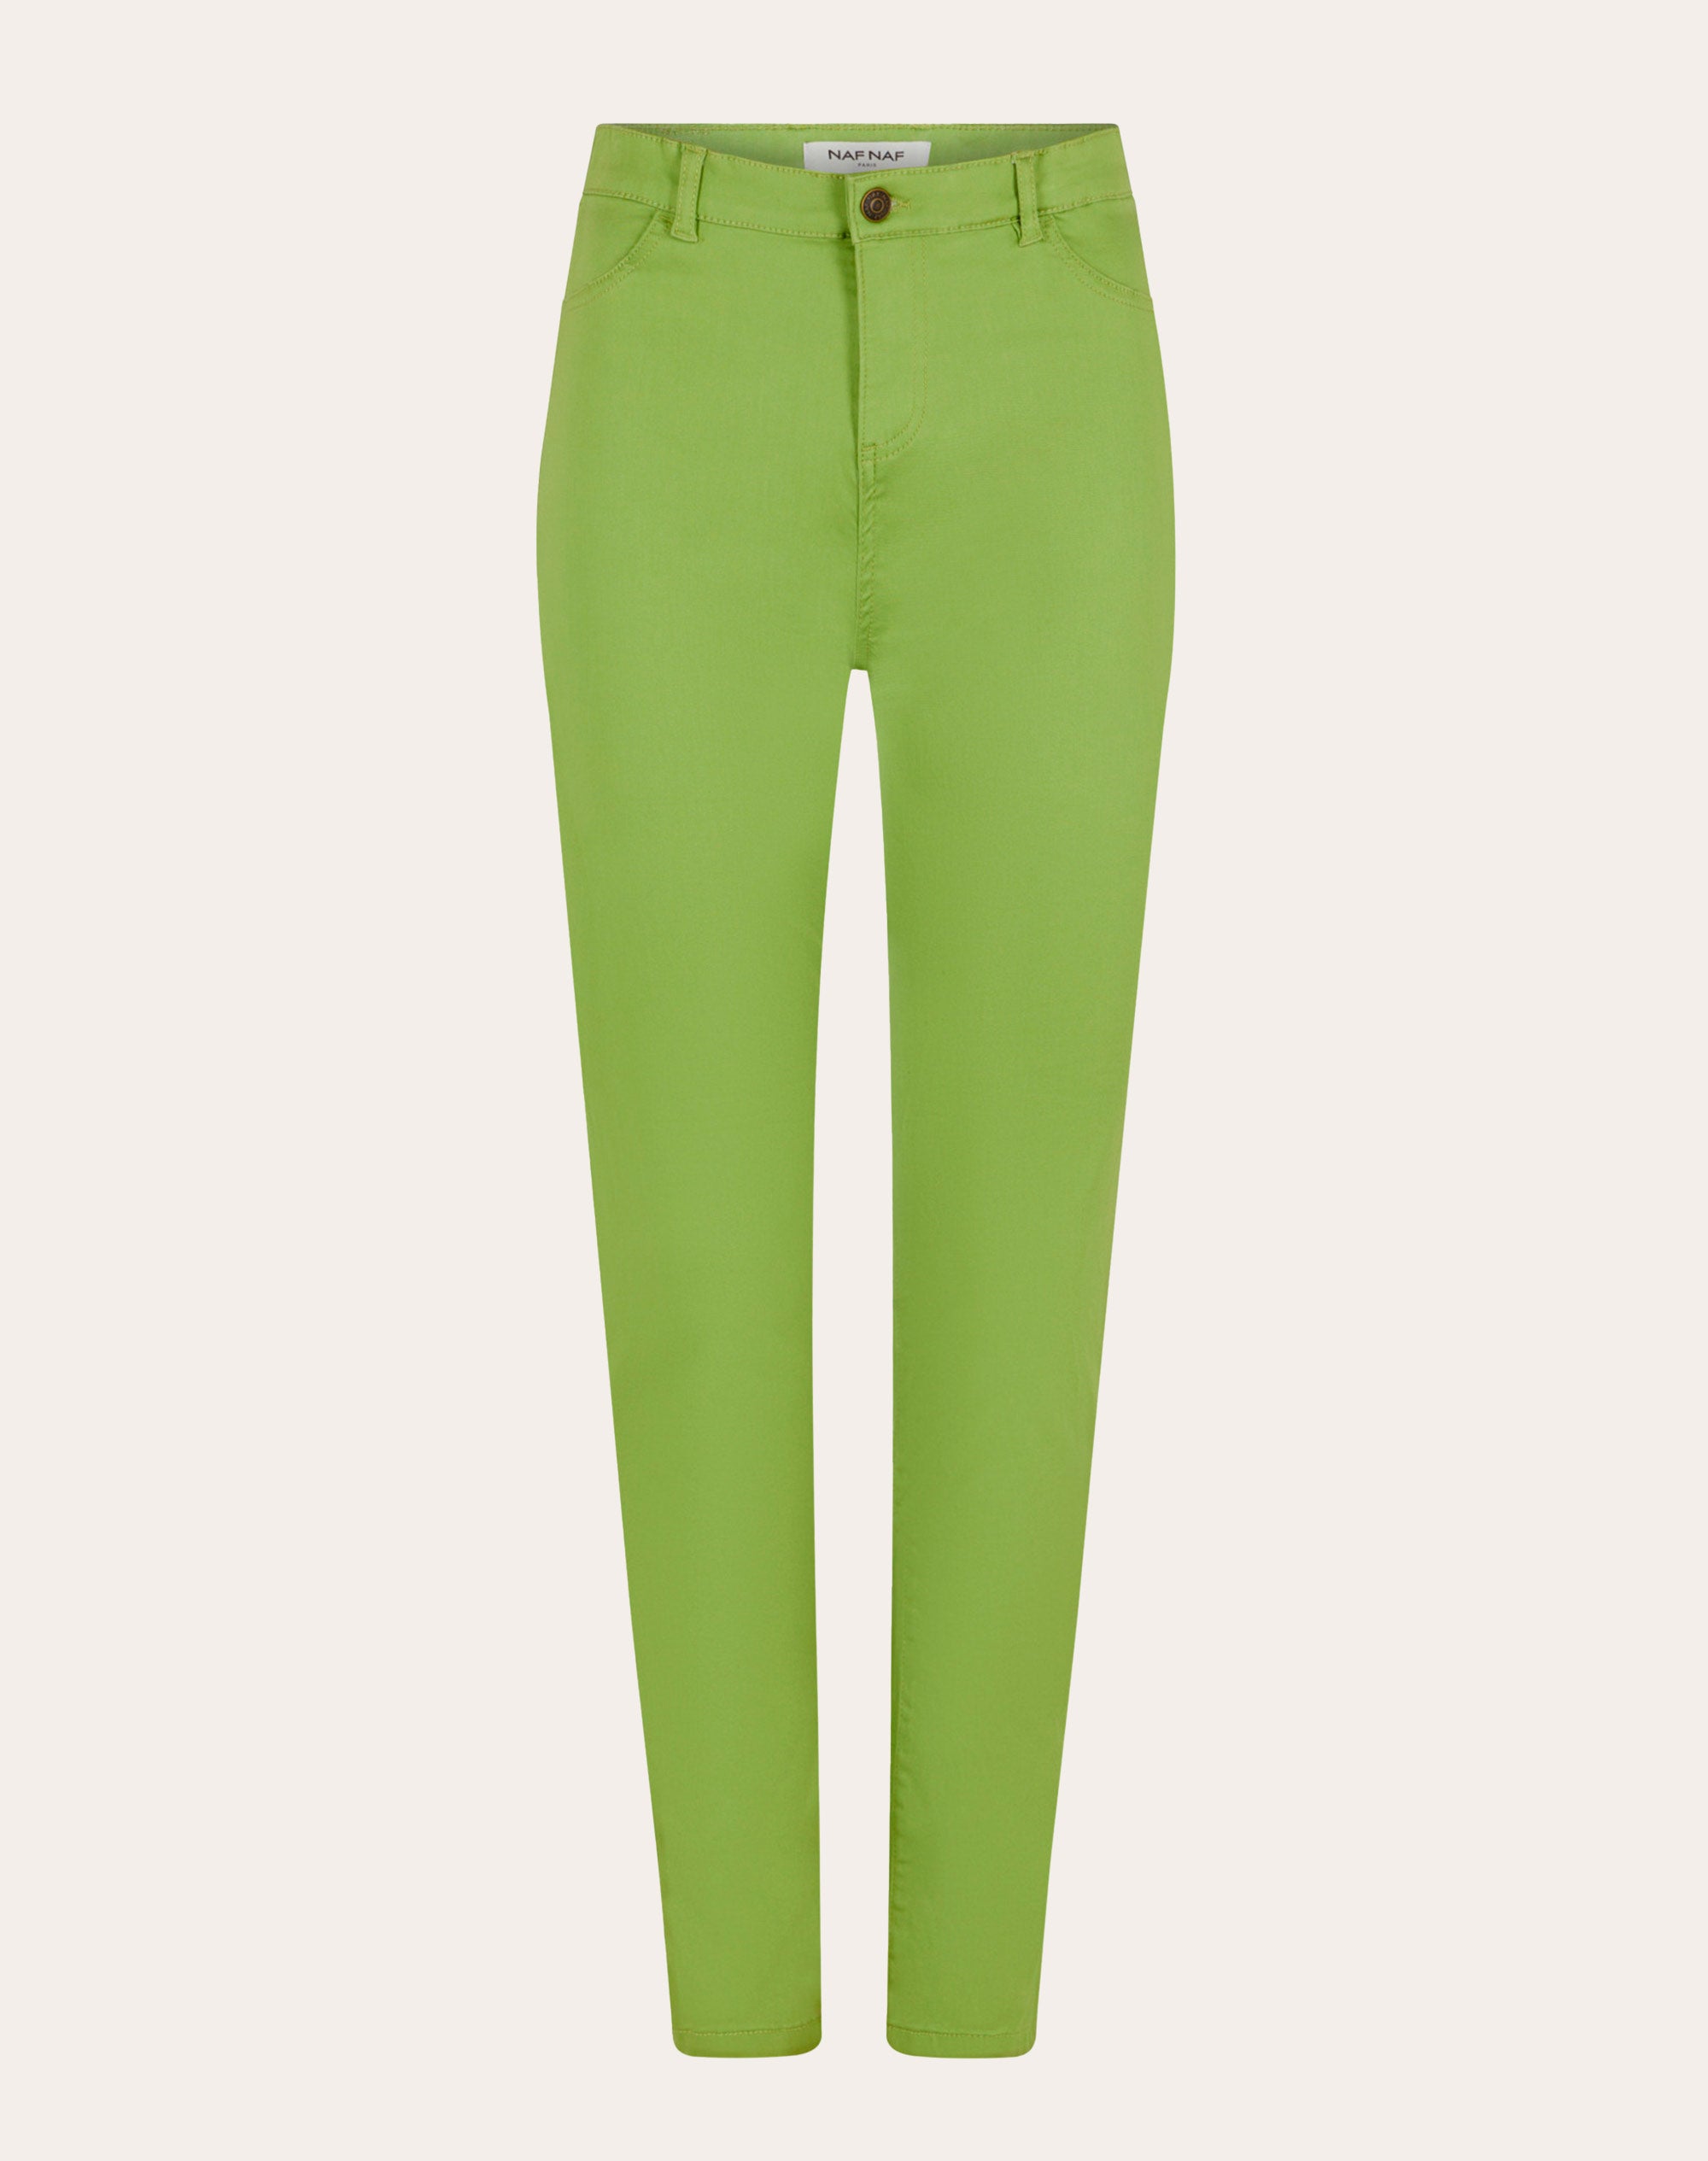 Pantalón skinny efecto mojado verde caqui mujer